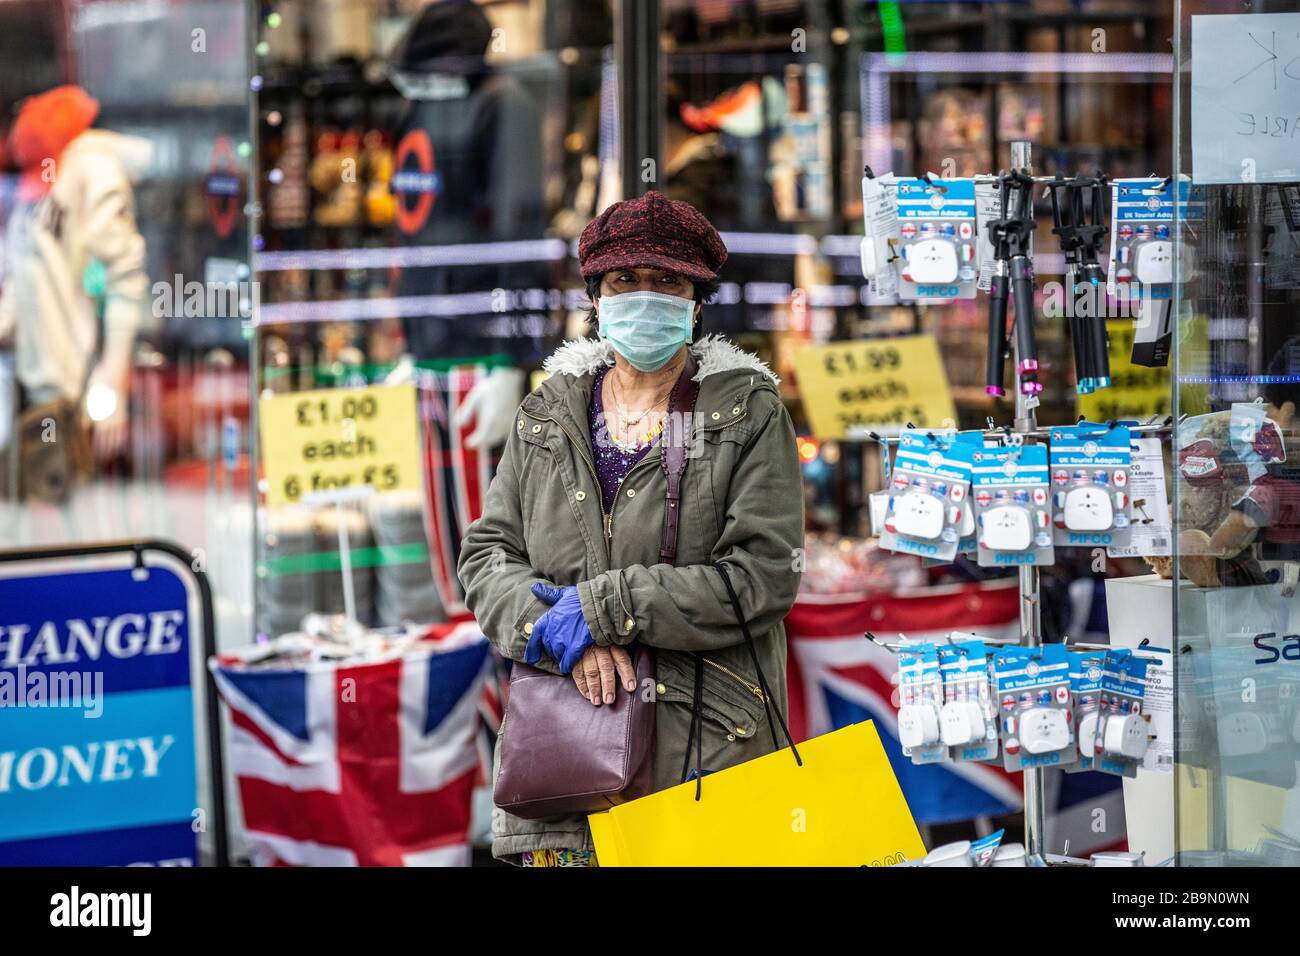 Les voyageurs prennent des précautions en portant un masque facial sur Oxford Street dans le West End de Londres contre l'infection de la pandémie de Covid19 de Coronavirus, Angleterre Banque D'Images